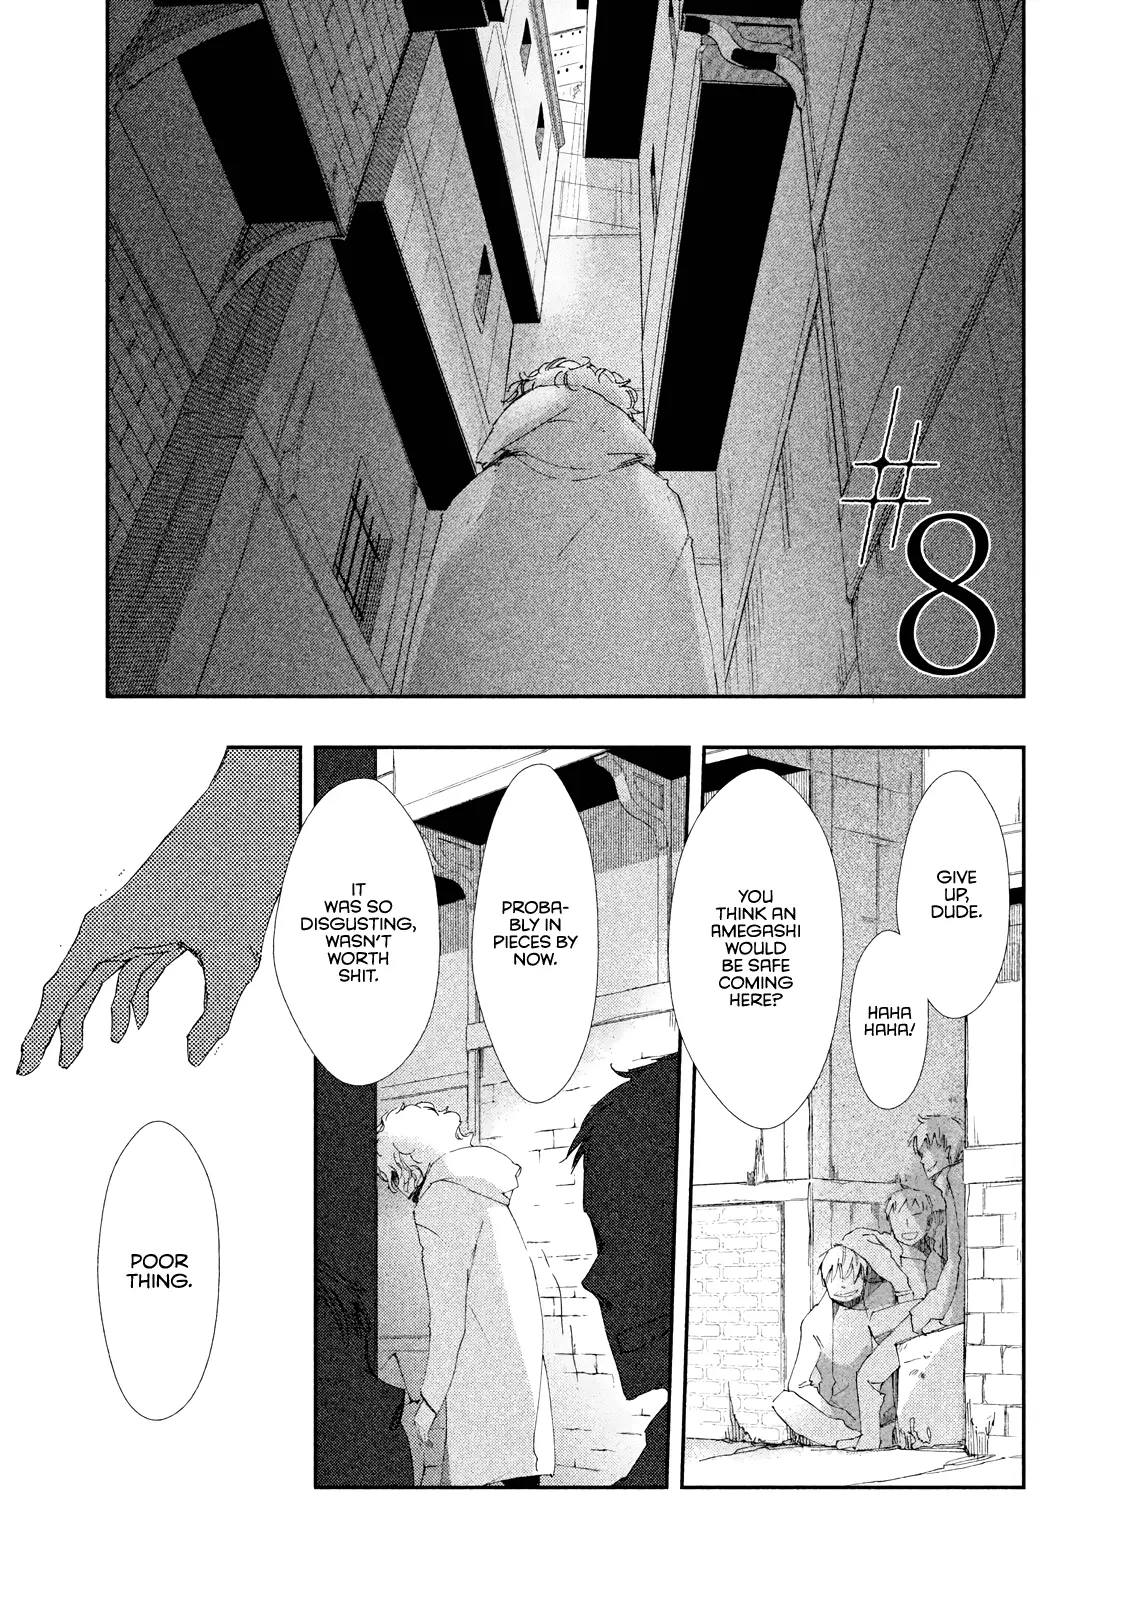 Amegashi - 8 page 2-1265e9f0